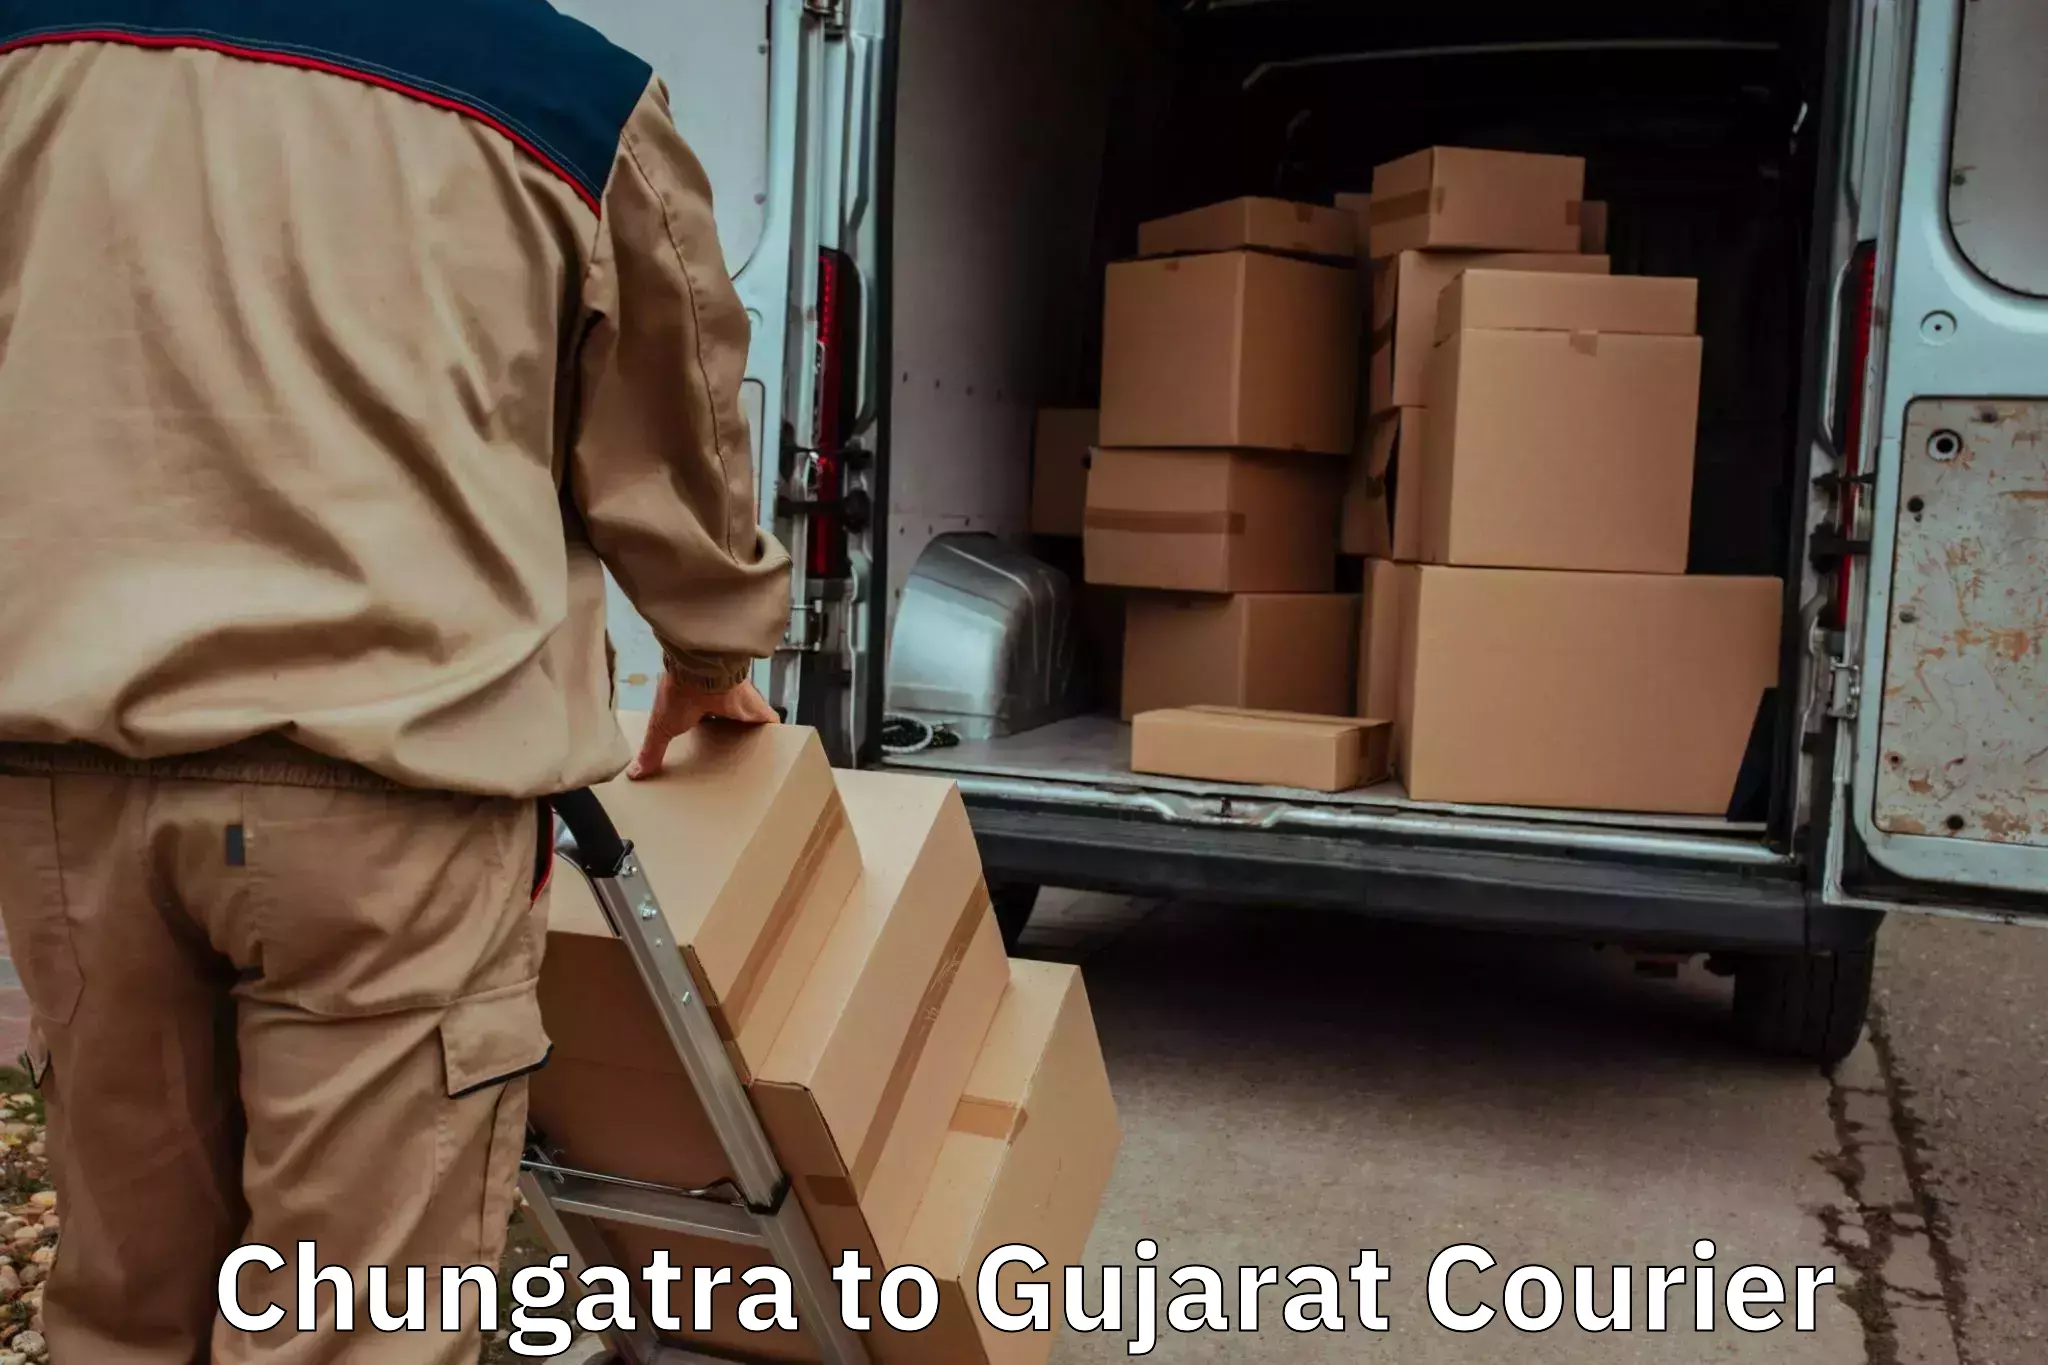 Expert goods movers Chungatra to Gujarat